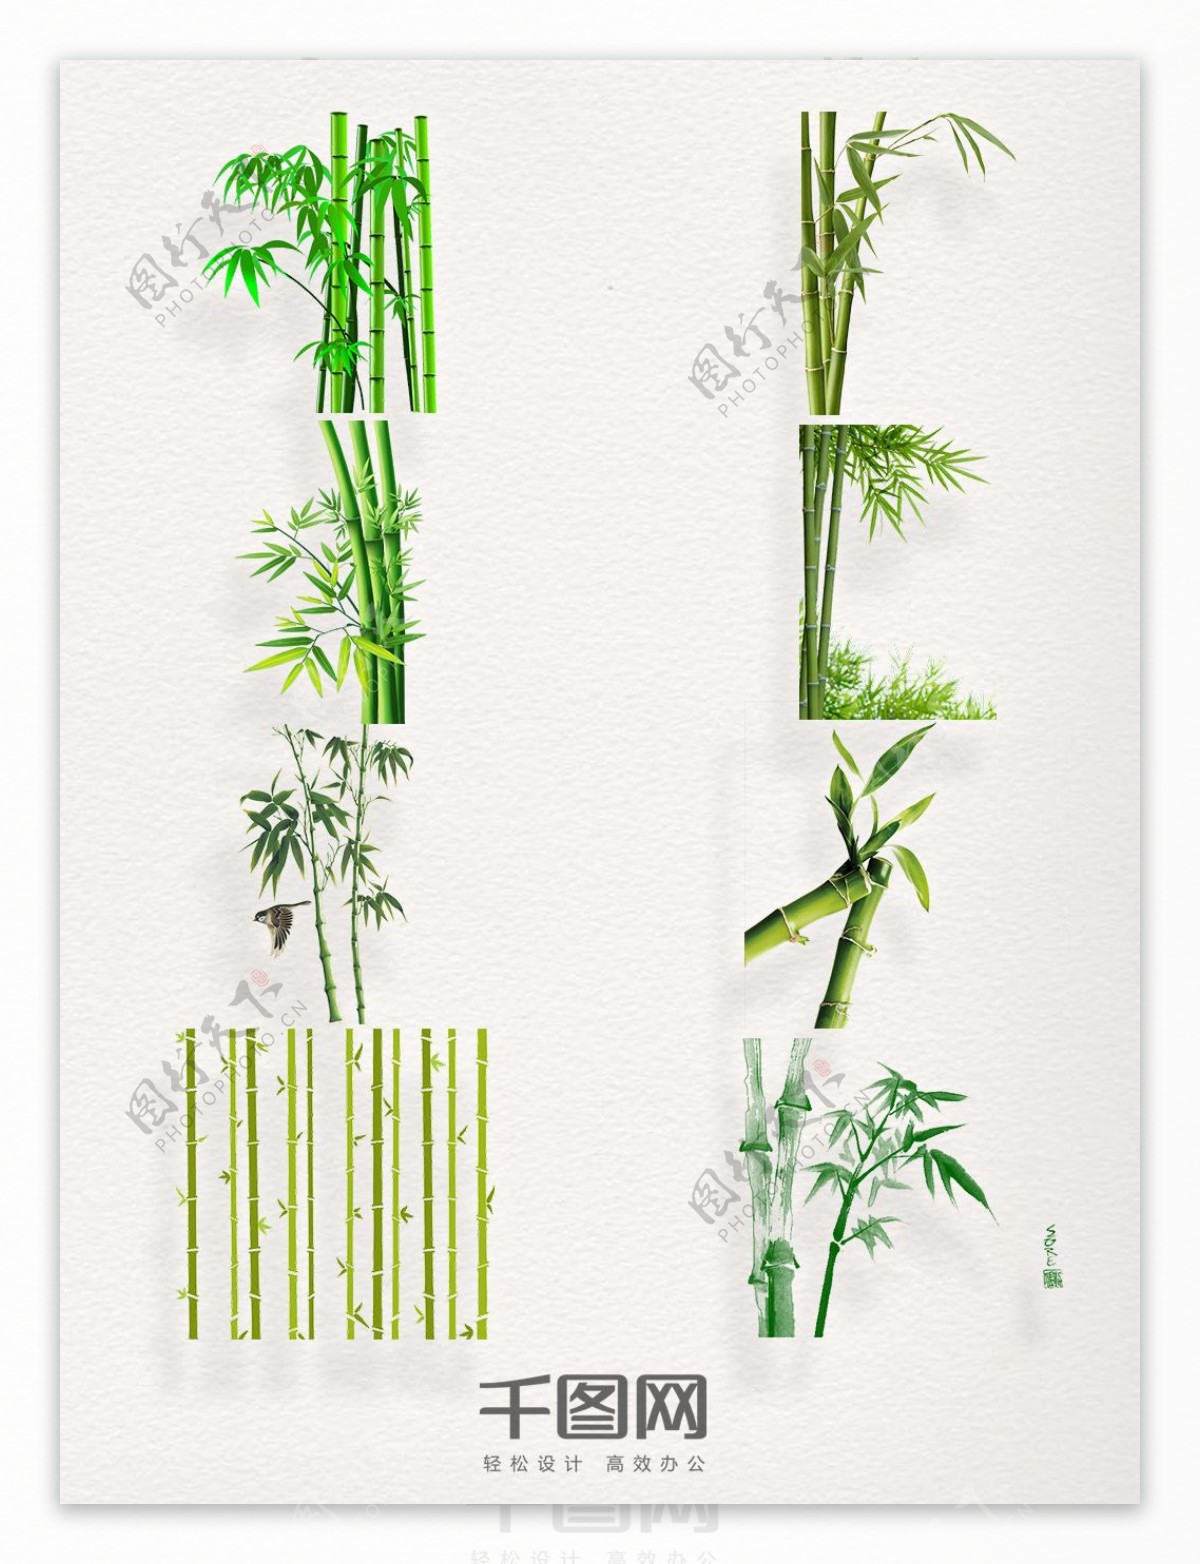 多款绿色竹子中国风png素材